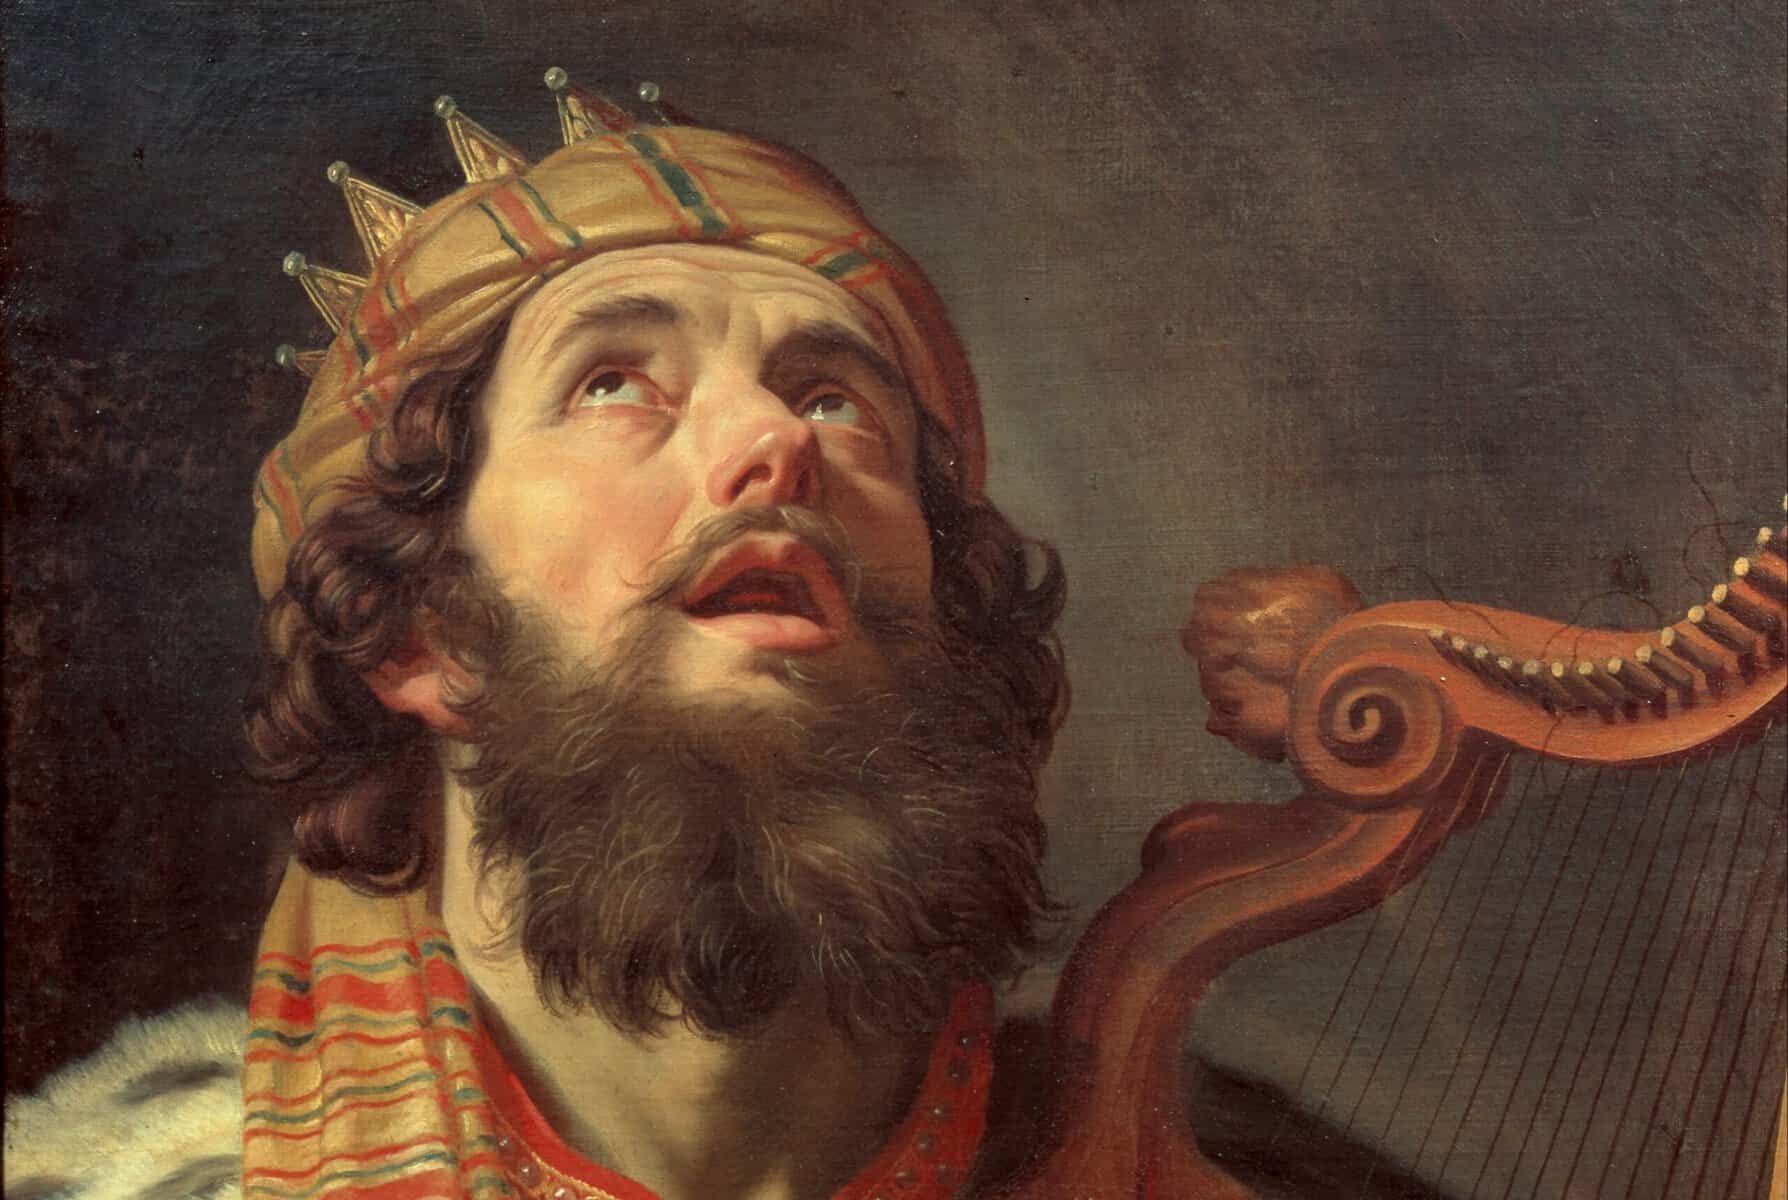 King David playing a harp